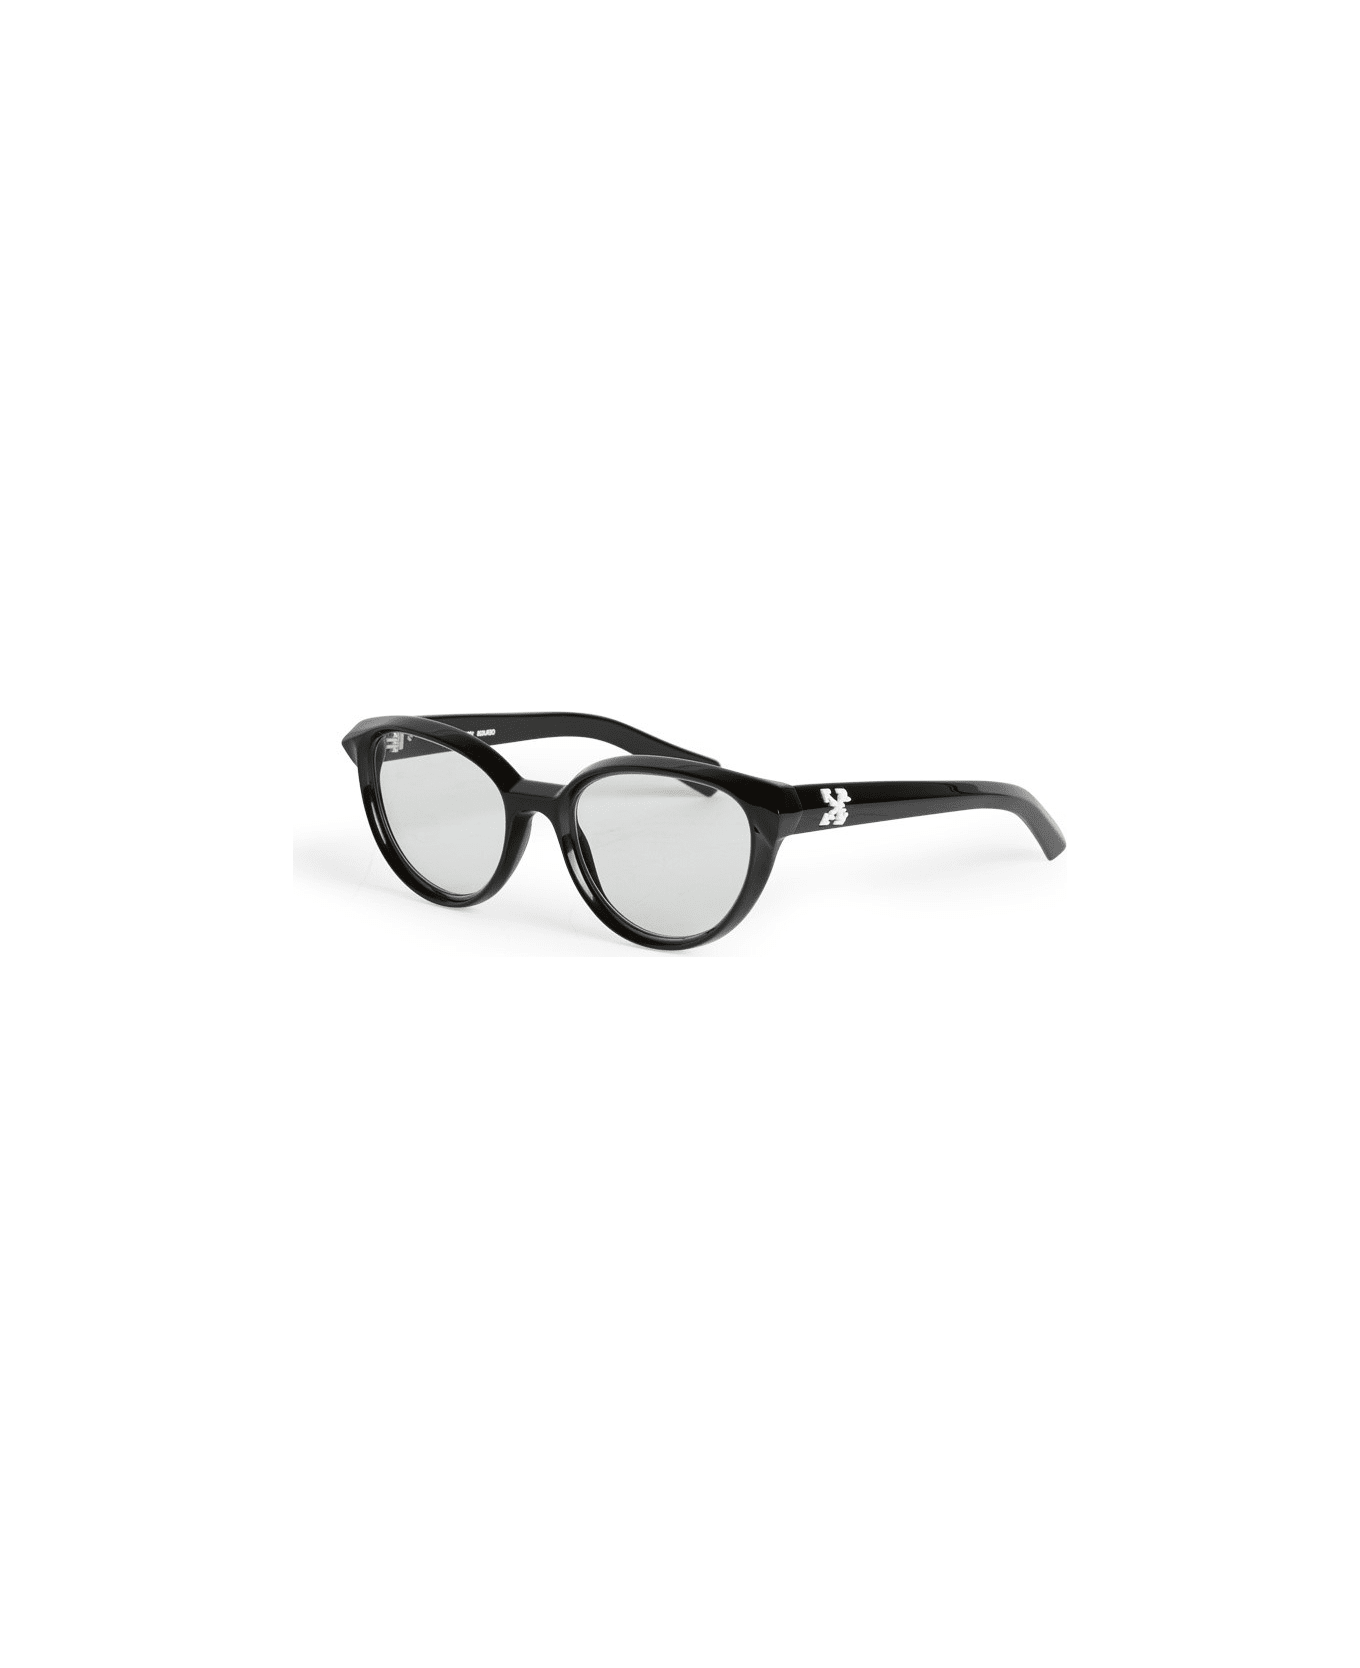 Off-White OPTICAL STYLE 26 Eyewear - Black